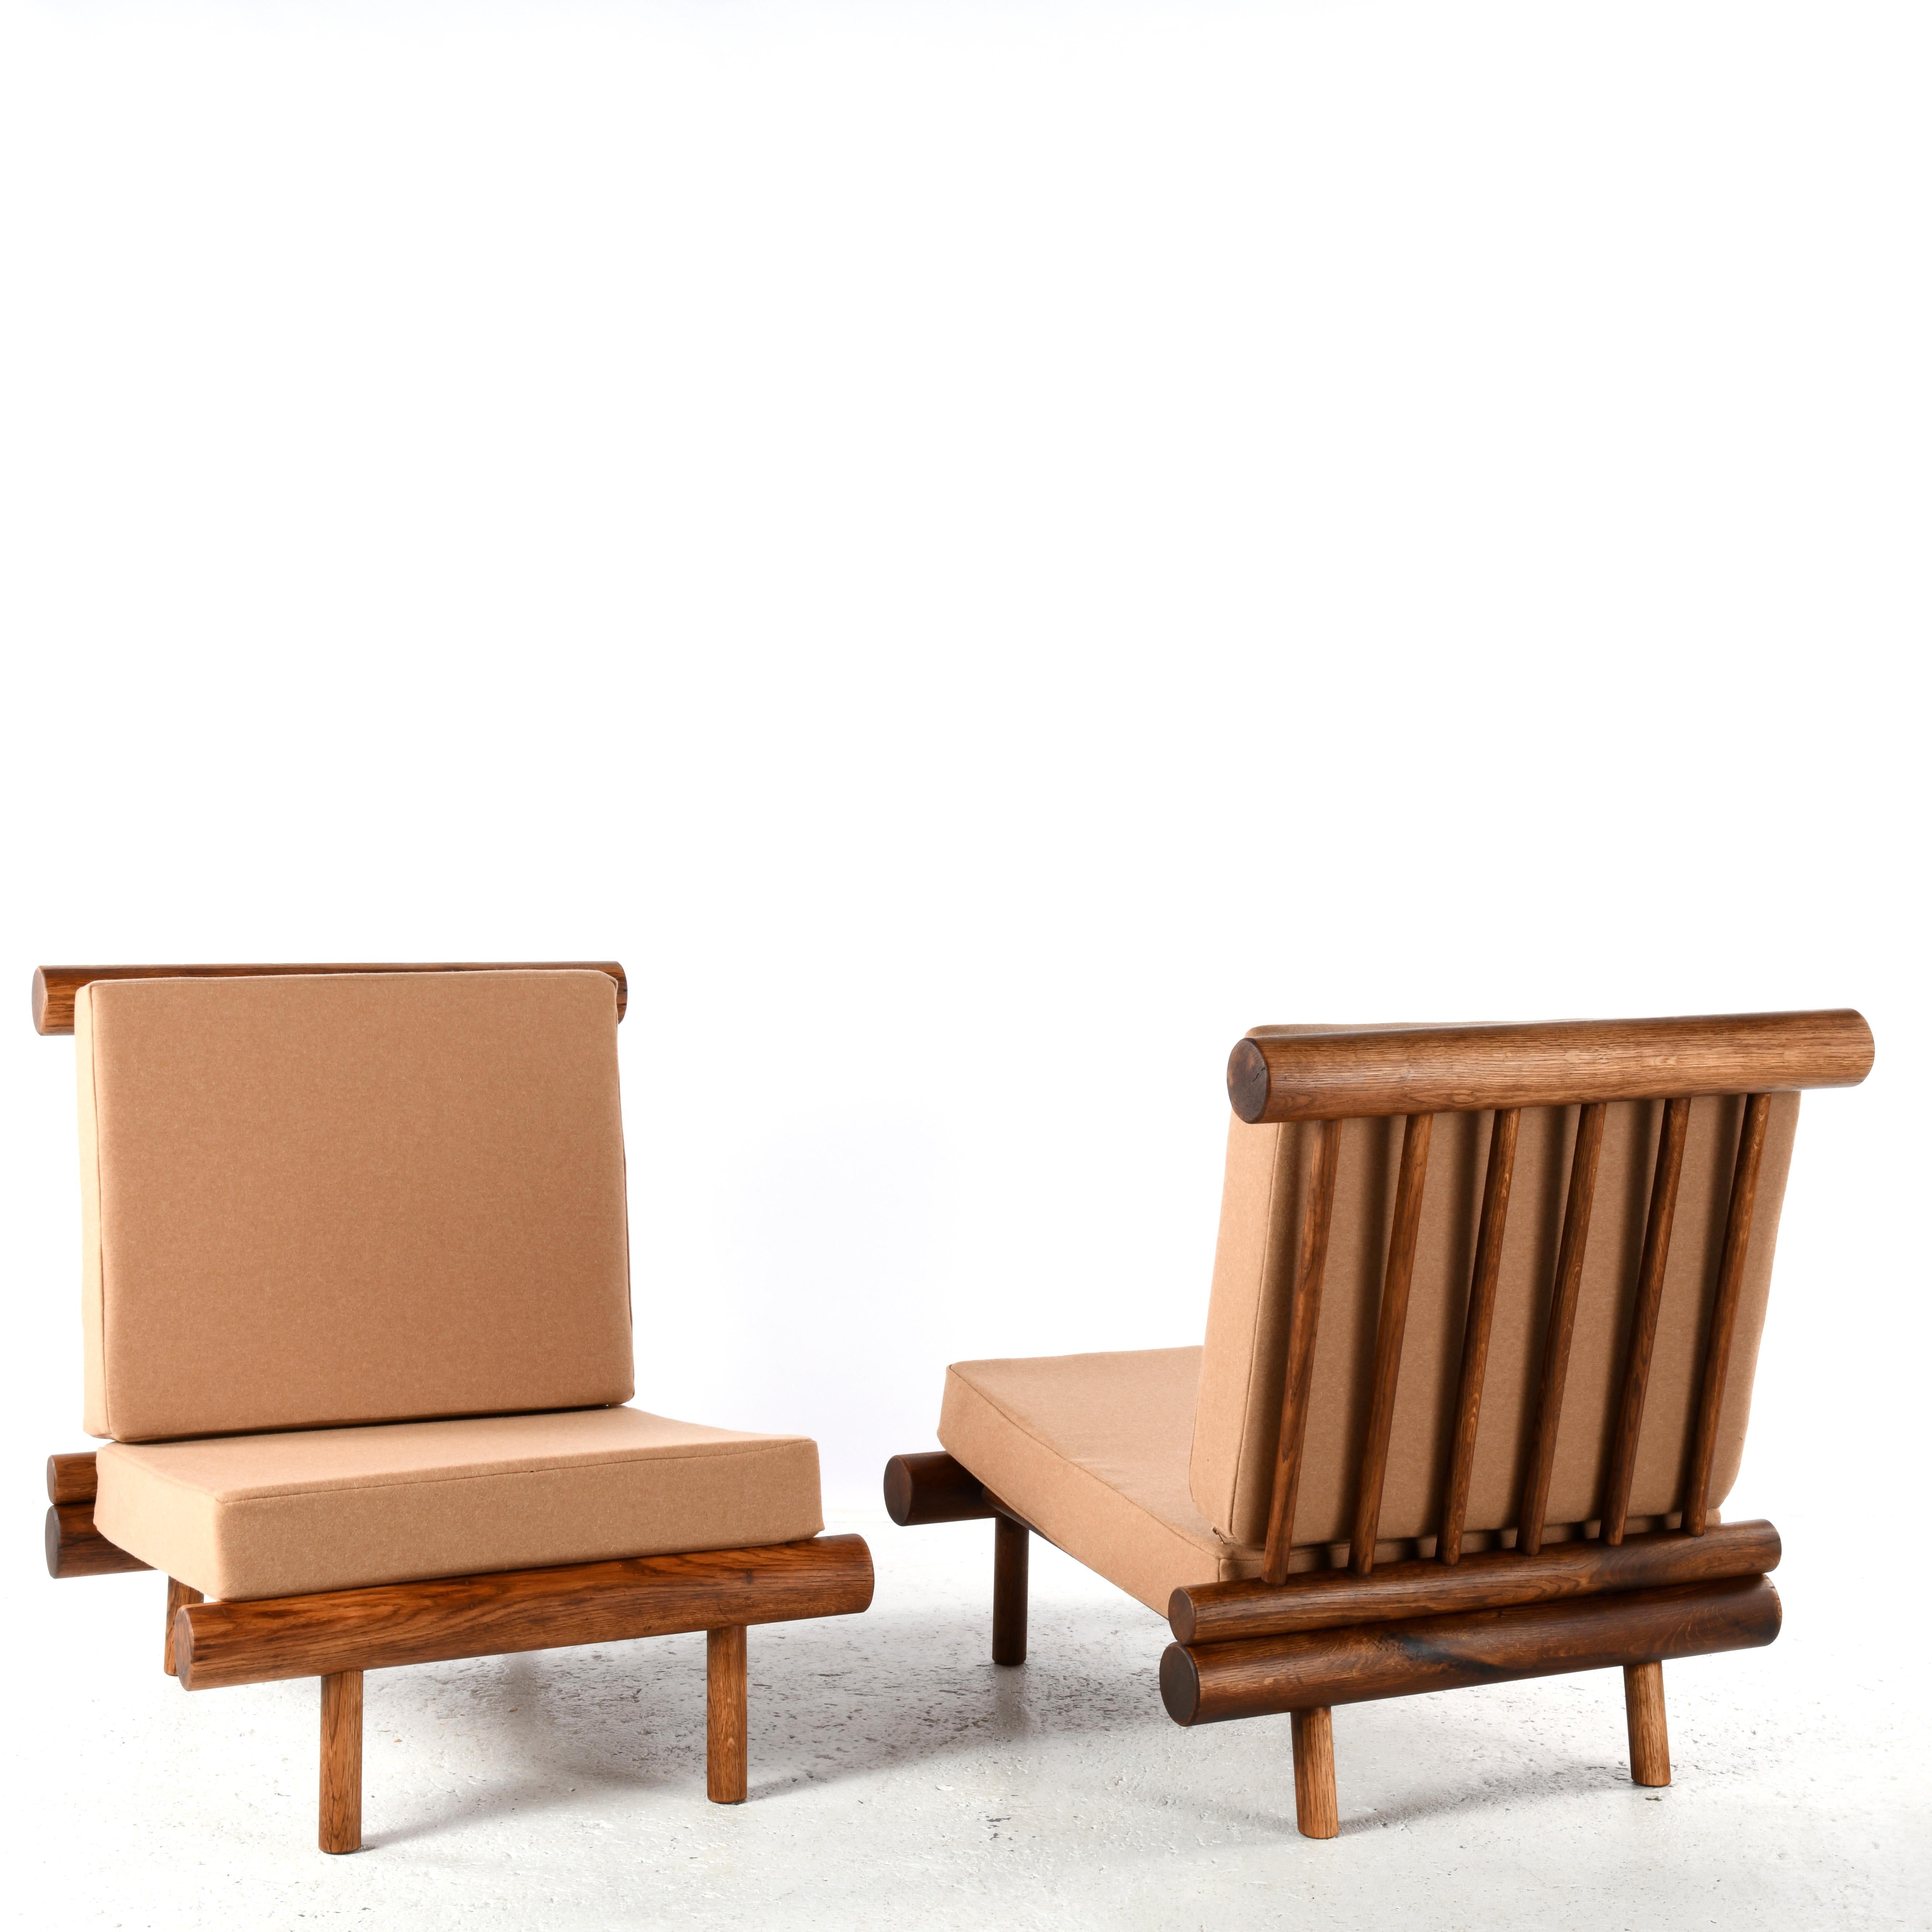 Ein Paar Kaminsessel aus Eiche, Charlotte Perriand zugeschrieben. Diese Stühle stammen aus der Residenz La Cachette, die sich im Skigebiet Les Arcs 1600 in den französischen Alpen befindet. Charlotte Perriand, die berühmte französische Architektin